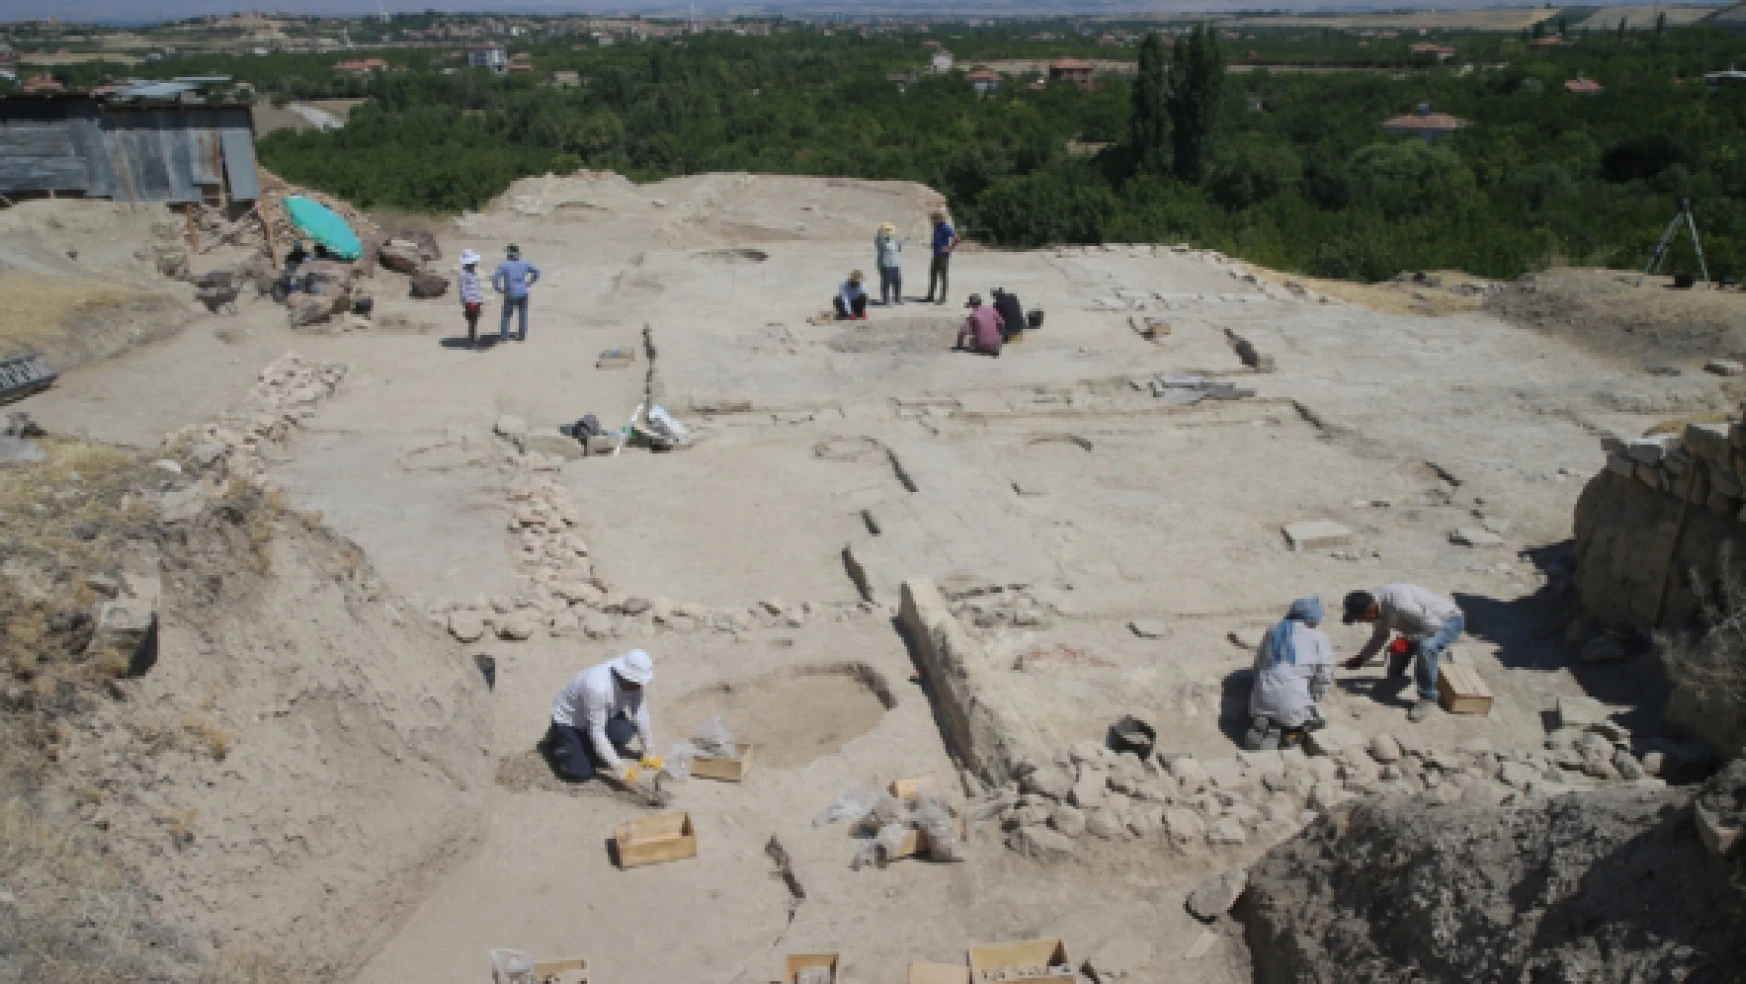 Arslantepe Höyüğü'nde arkeolojik kazı çalışmaları devam ediyor!